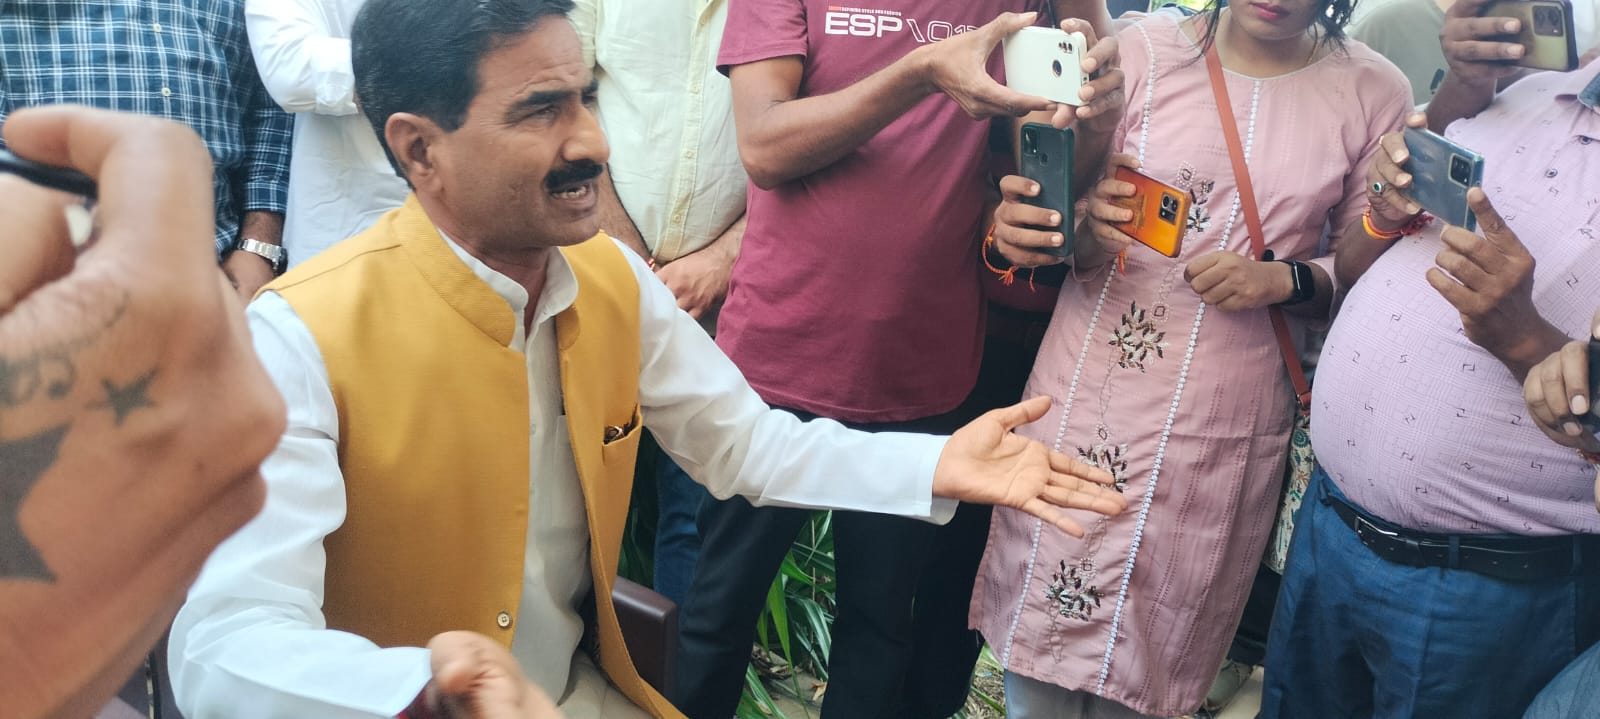 मध्य प्रदेश से बड़ी खबर  शिवपुरी जिले से बीजेपी विधायक वीरेंद्र रघुवंशी ने दिया इस्तीफा बोले- सिंधिया के आने के बाद भाजपा की रीति-नीति ही बदल गई  ग्वालियर, चंबल में कुचला जा रहा मूल कार्यकर्ताओं को